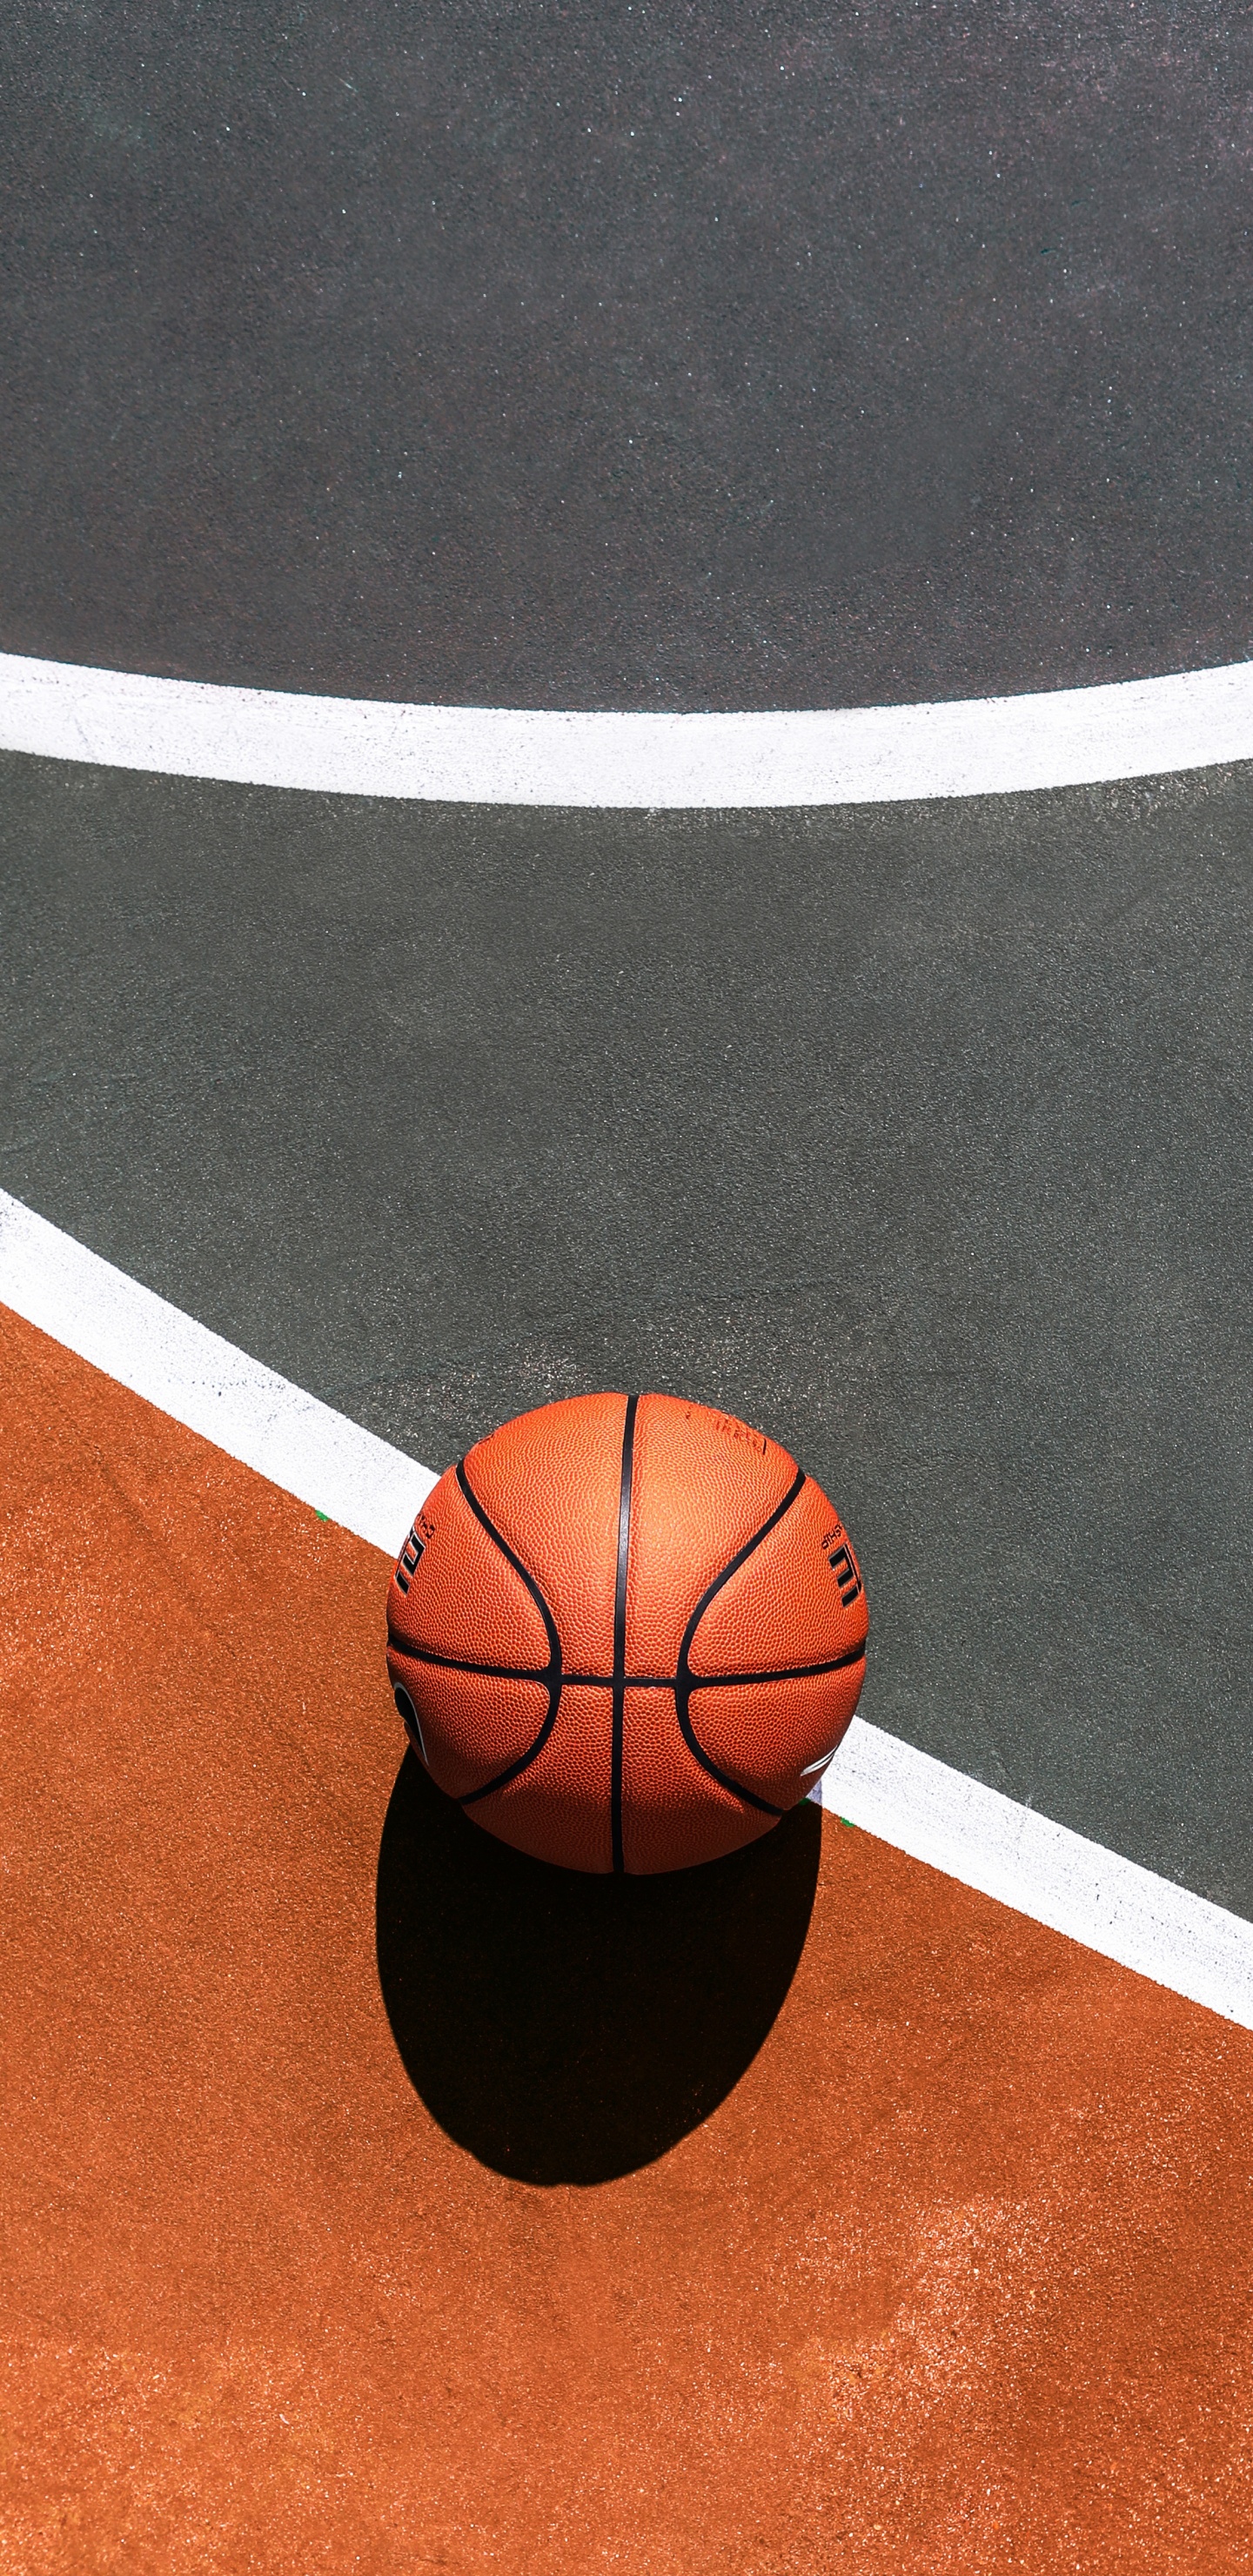 Basketball Auf Blau-weißem Basketballplatz. Wallpaper in 1440x2960 Resolution